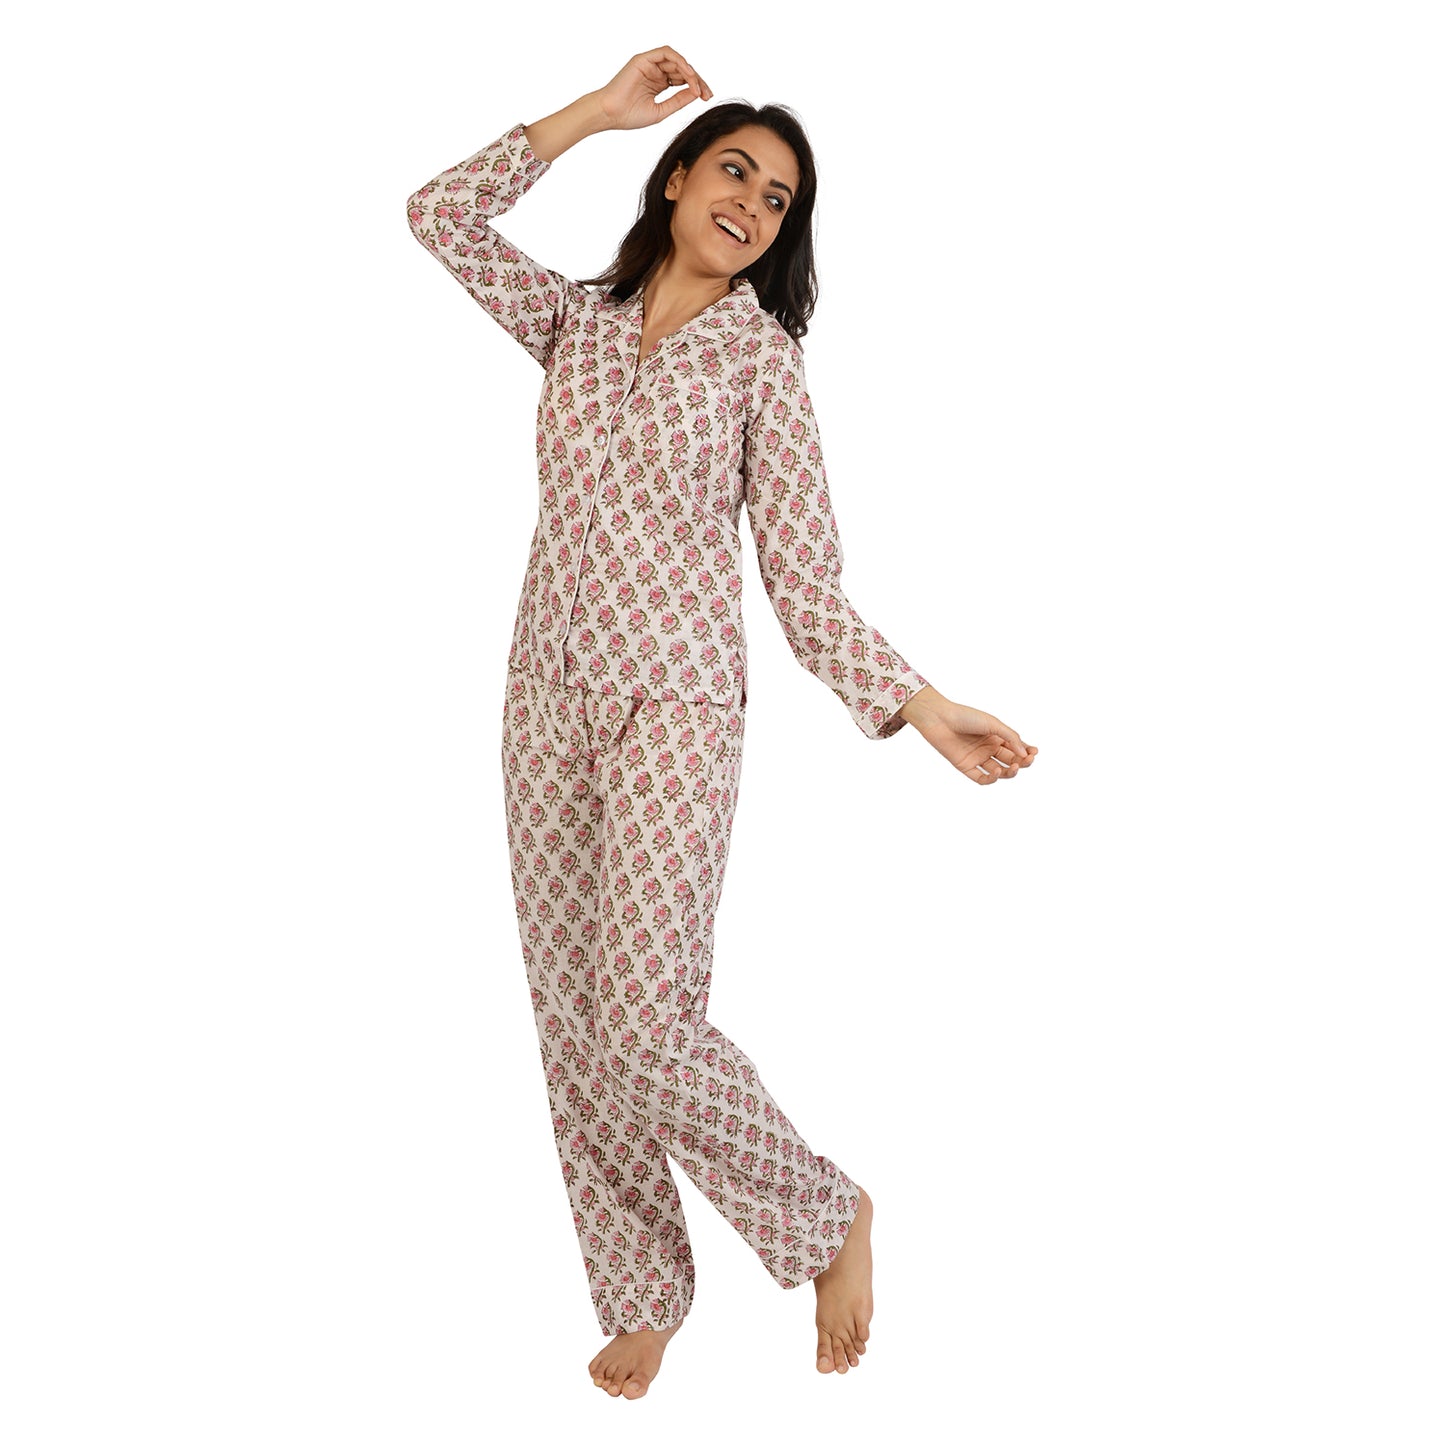 Dumbell Dew Drops Printed Pajama Set